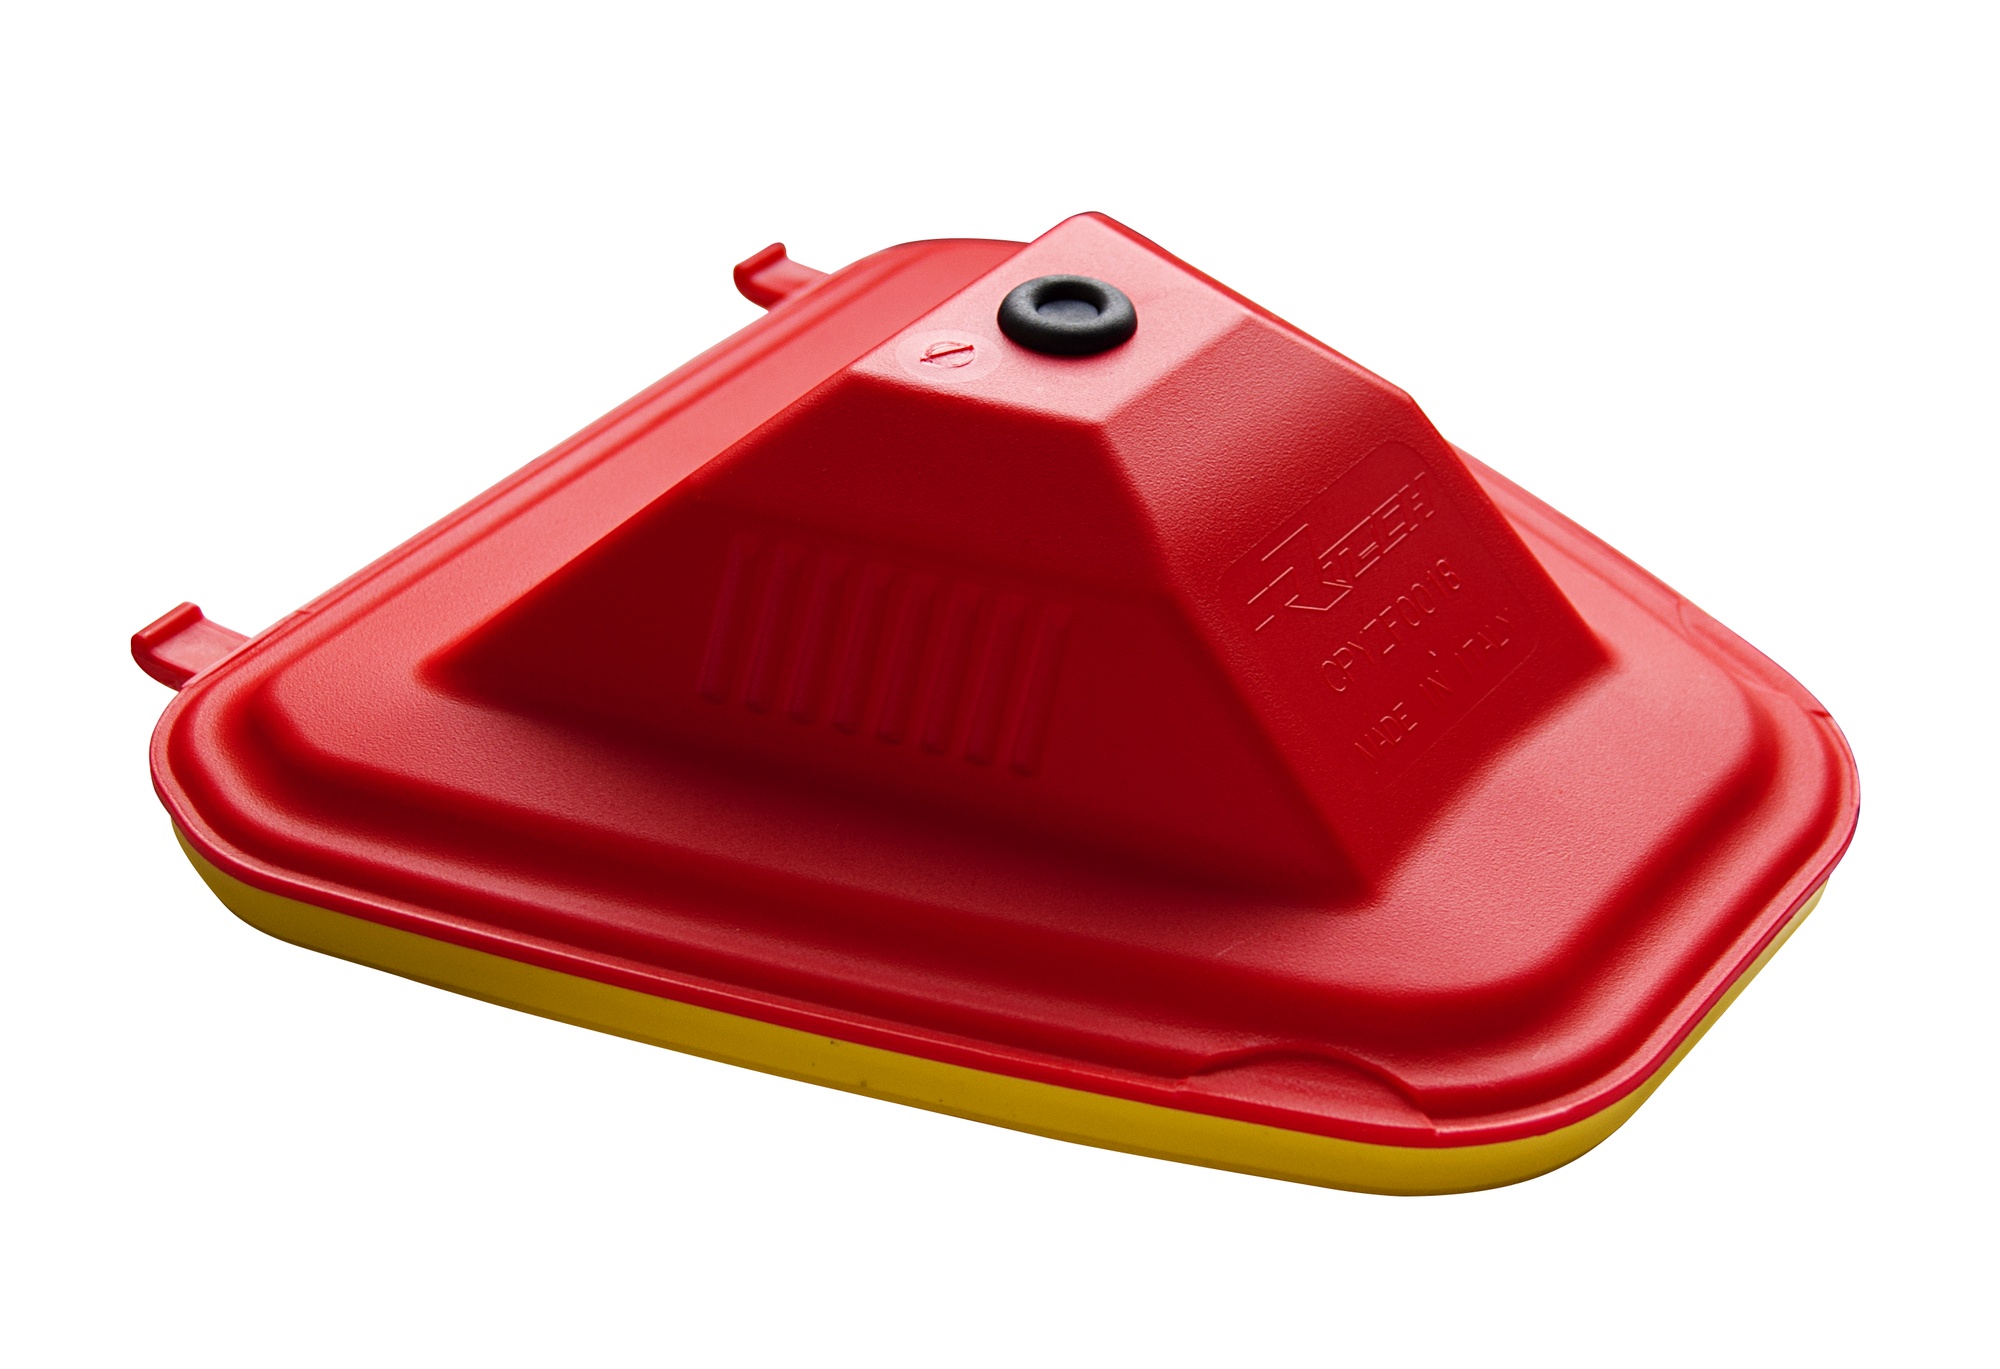 Obrázek produktu vrchní kryt vzduchového filtru Yamaha, RTECH (červeno-žlutý) R-CPYZF0018BL